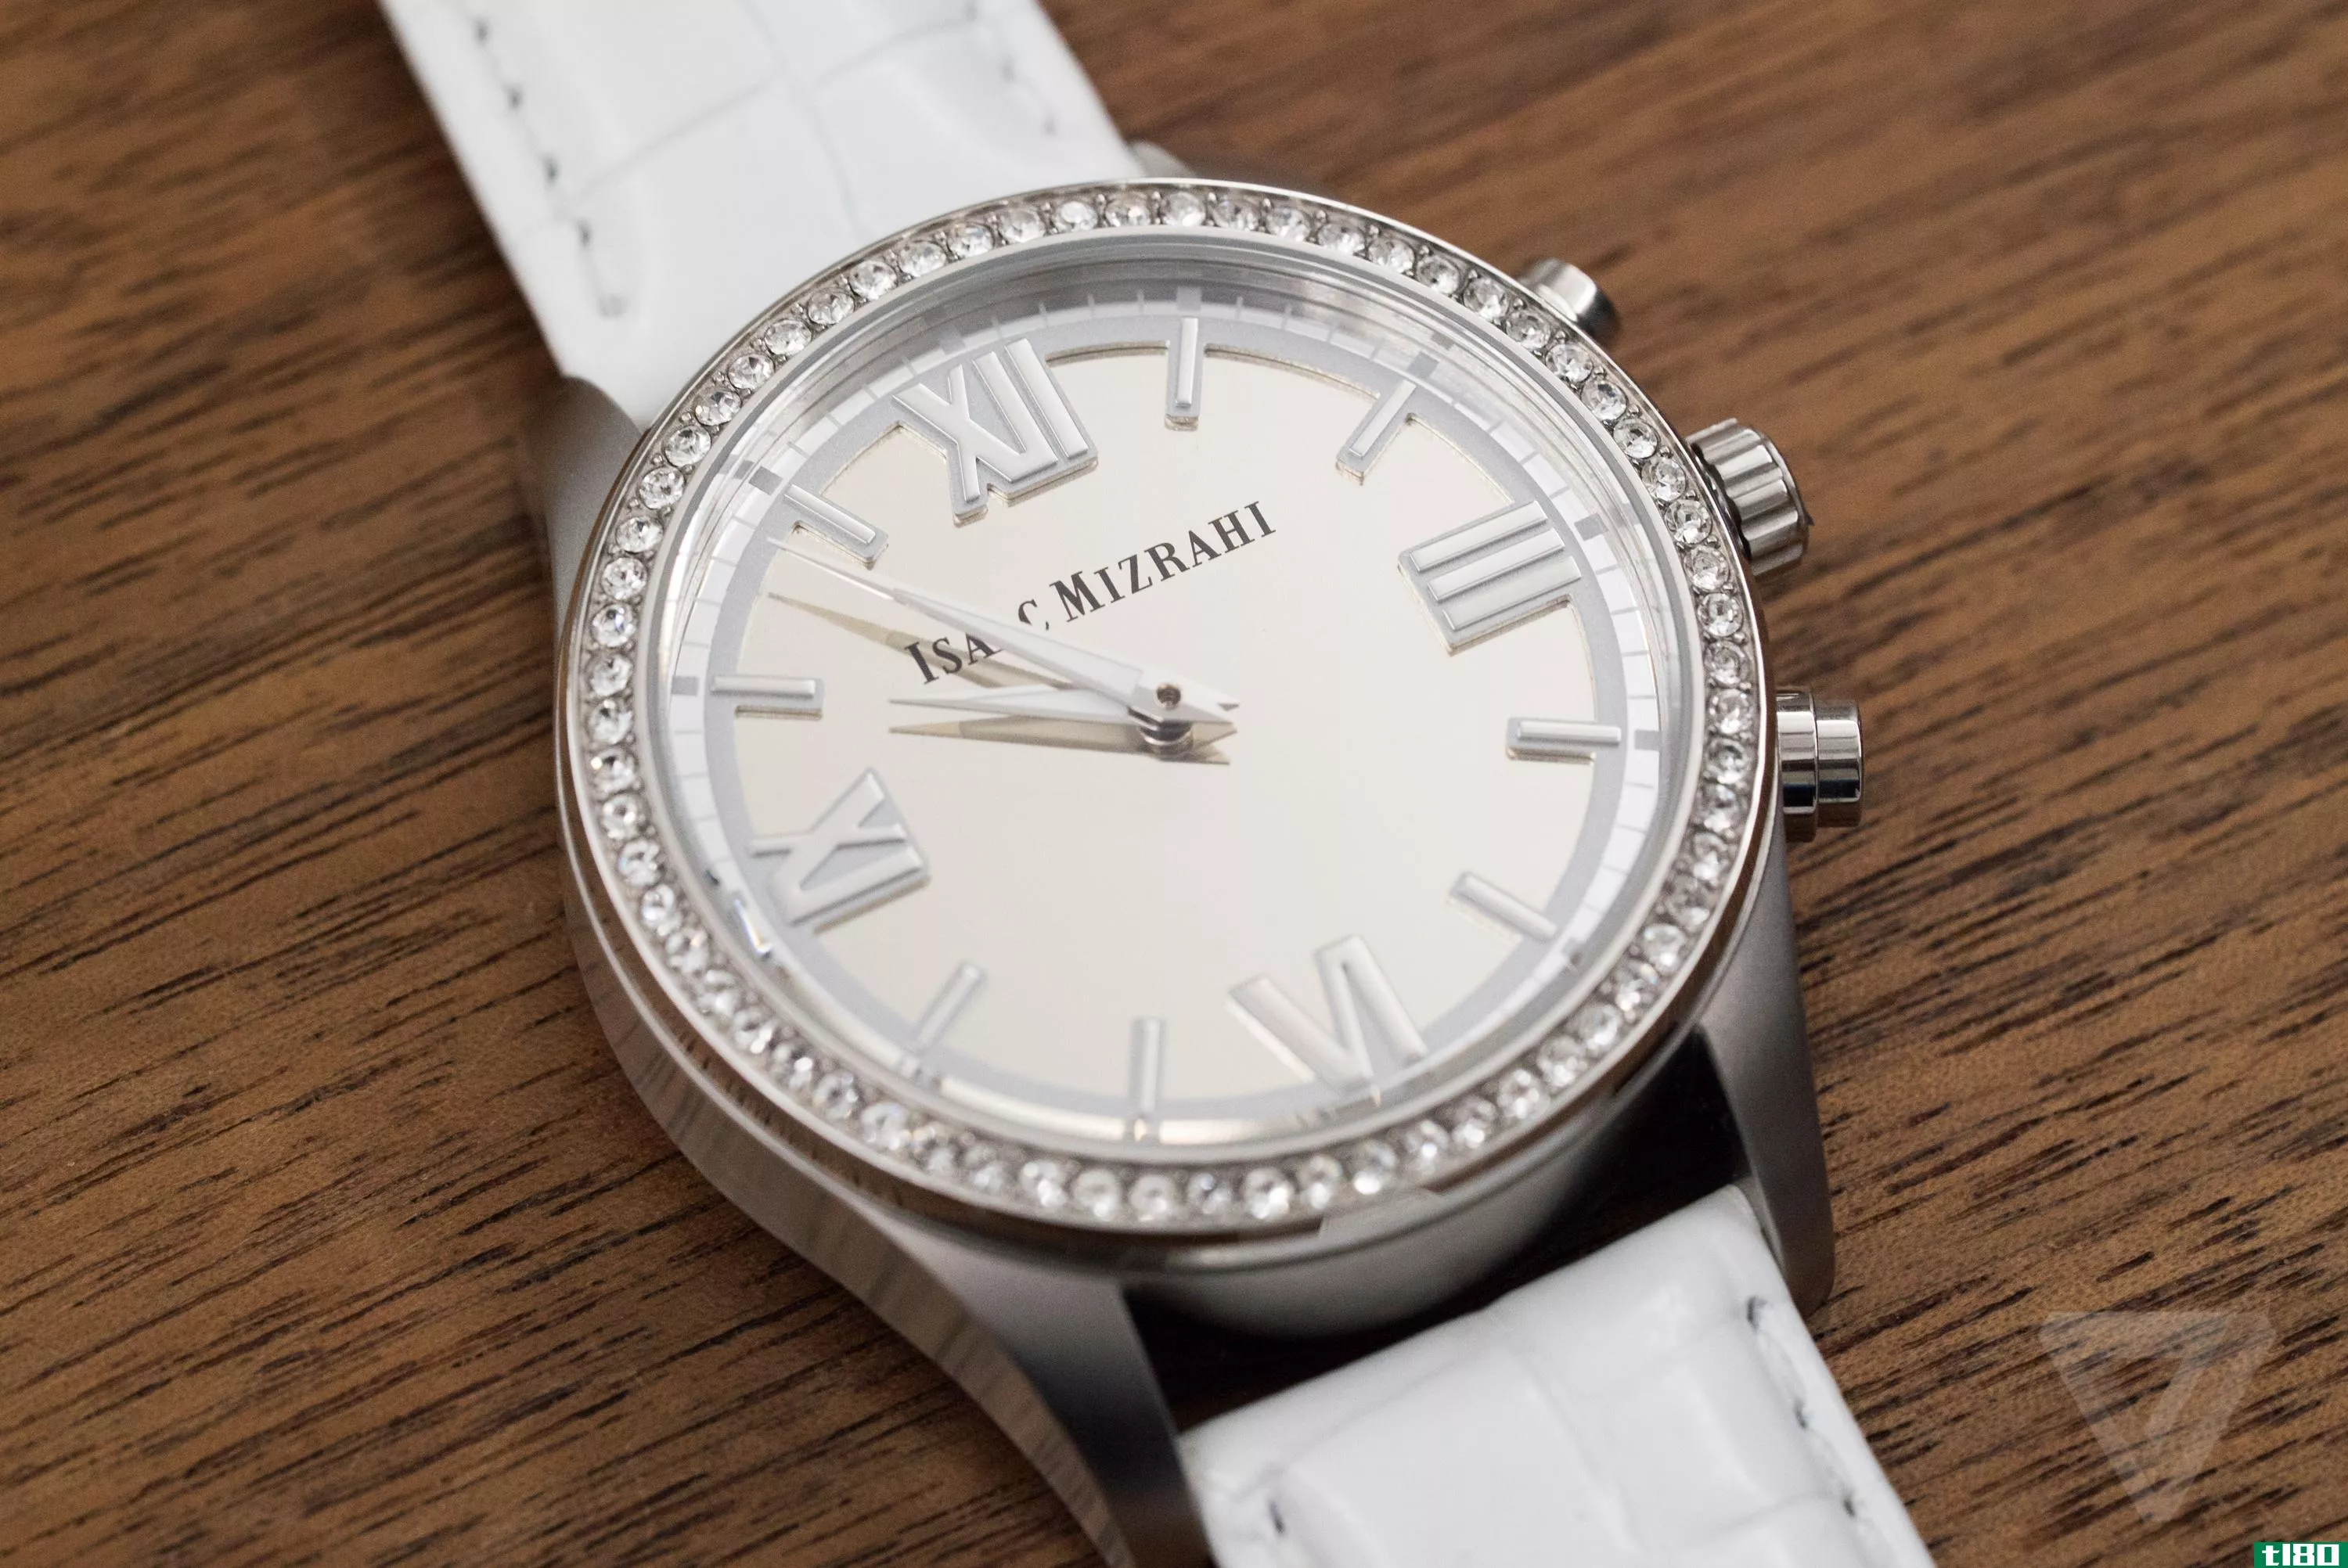 惠普的isaac mizrahi智能手表不过是另一款镶满珠宝的智能手表